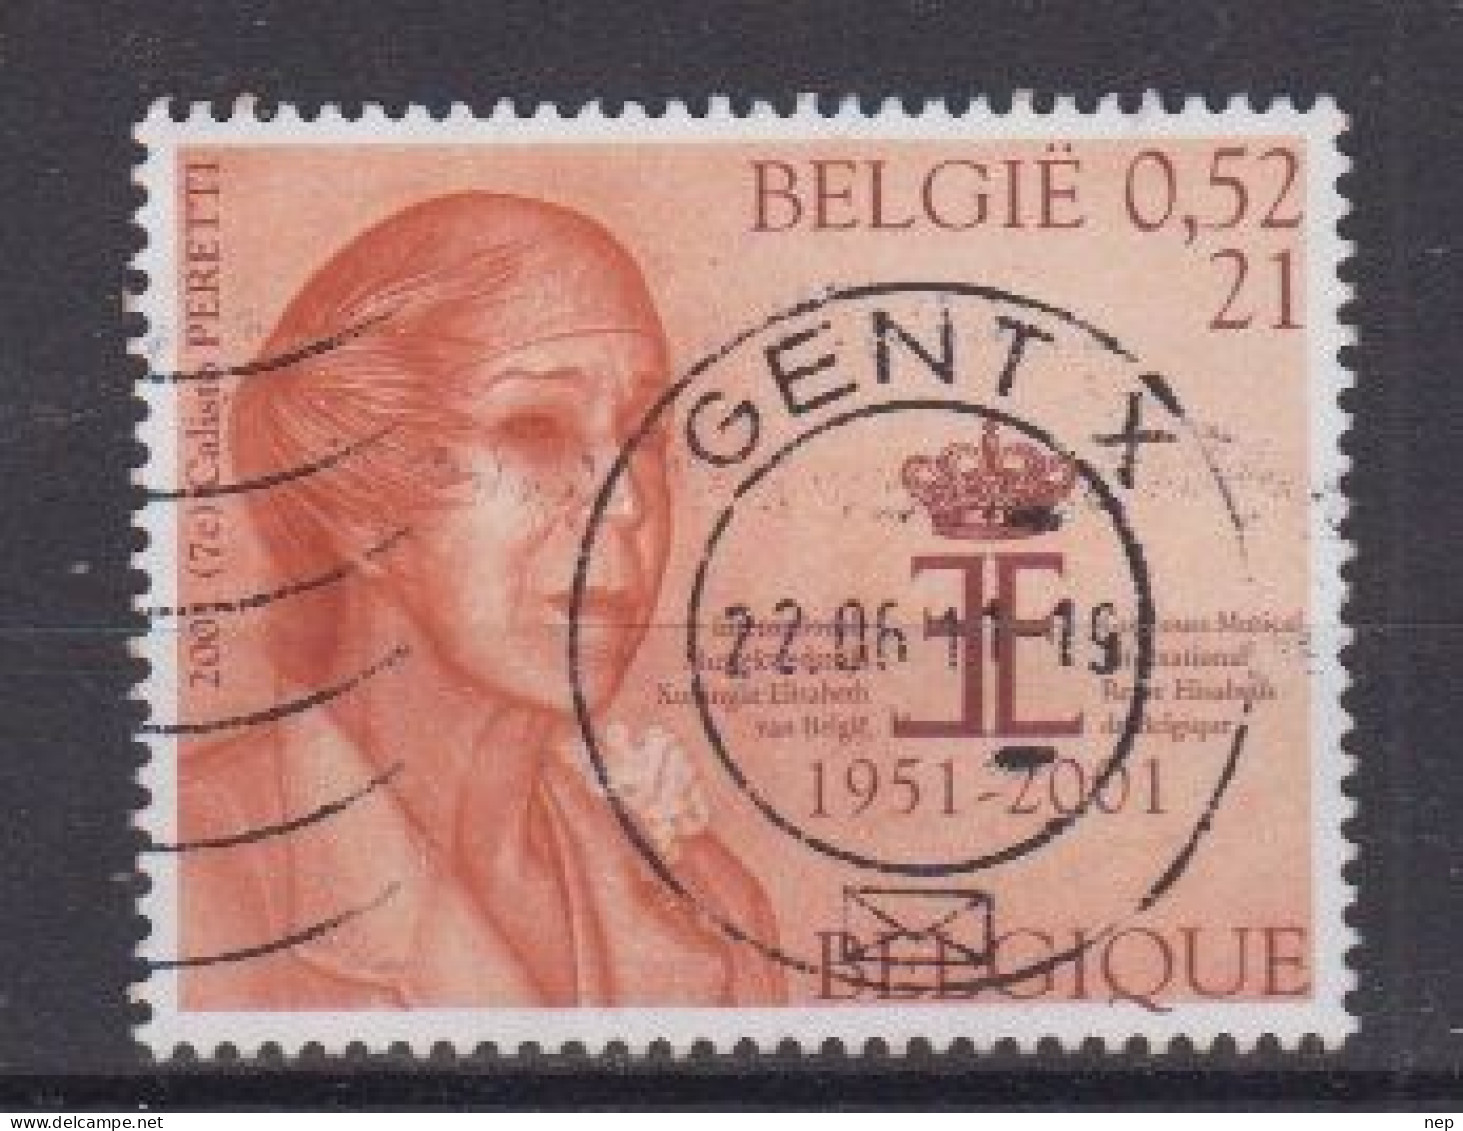 BELGIË - OPB - 2001 - Nr 2992 (GENT) - Gest/Obl/Us - Usados